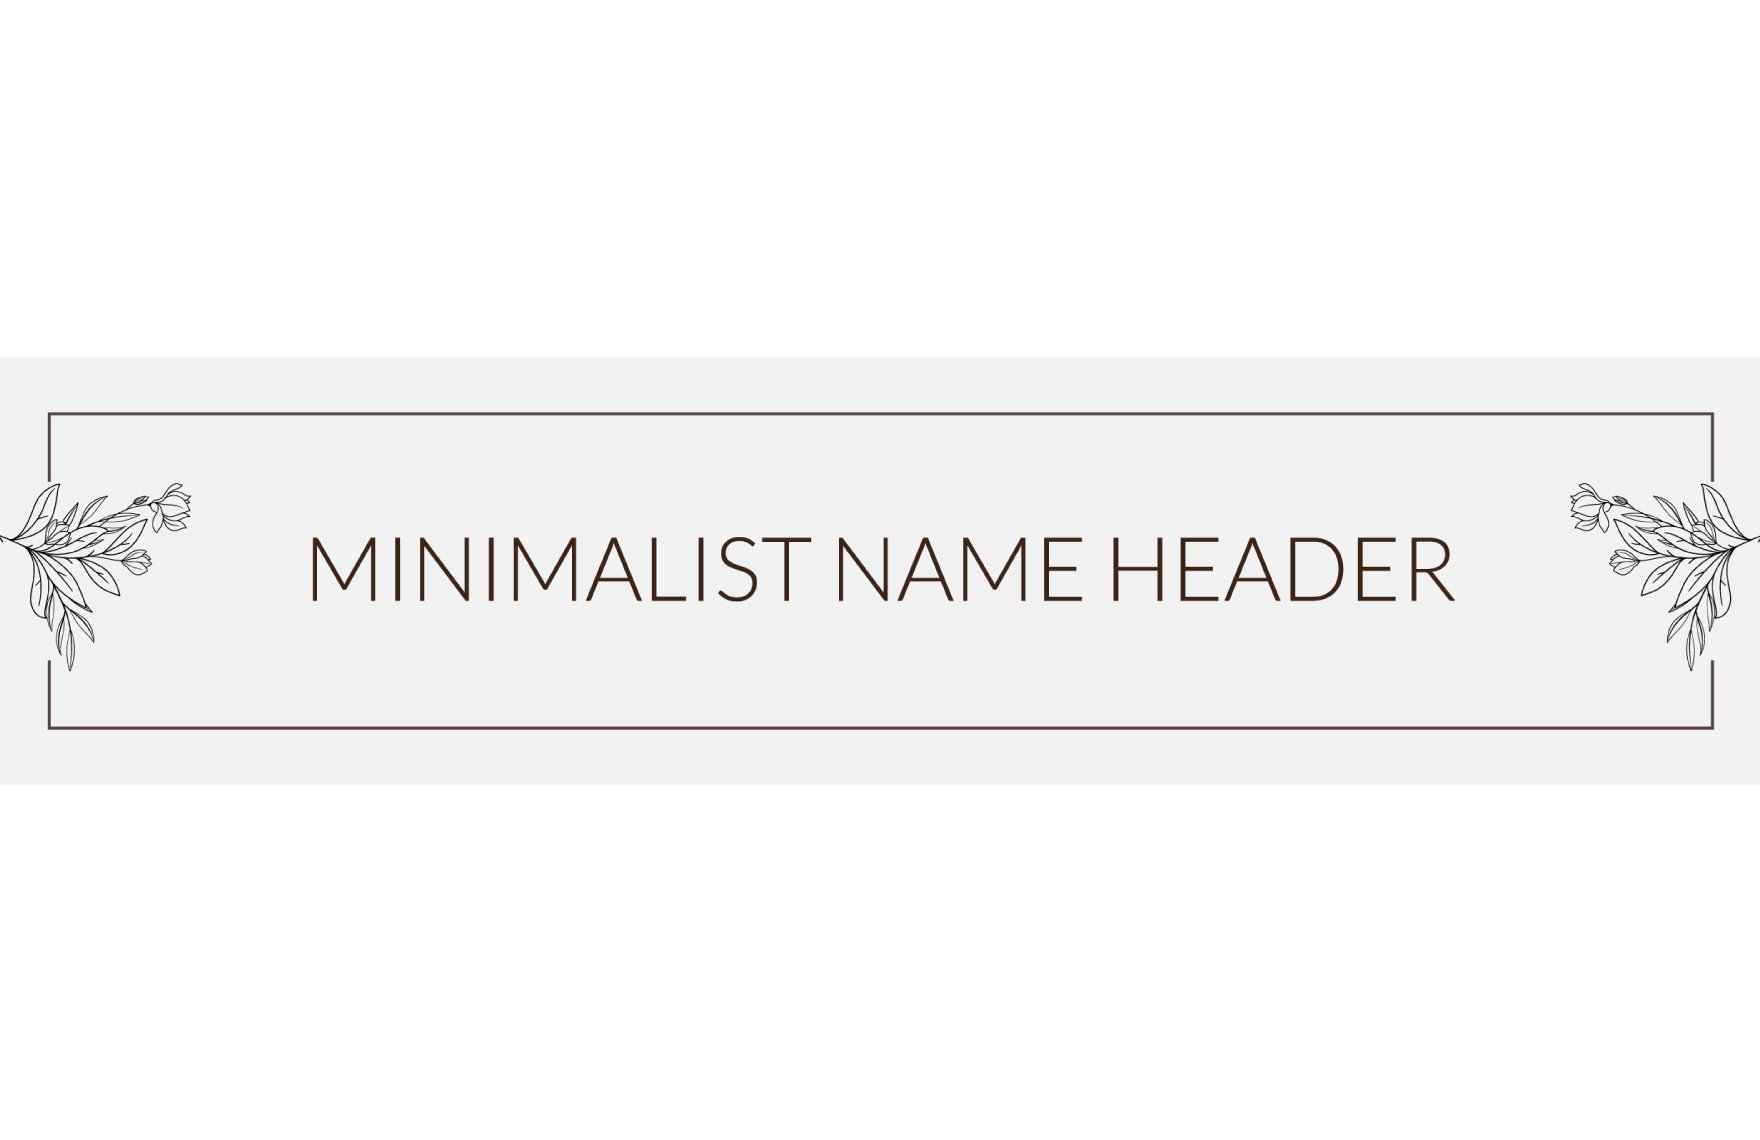 Minimalist Name Header Template